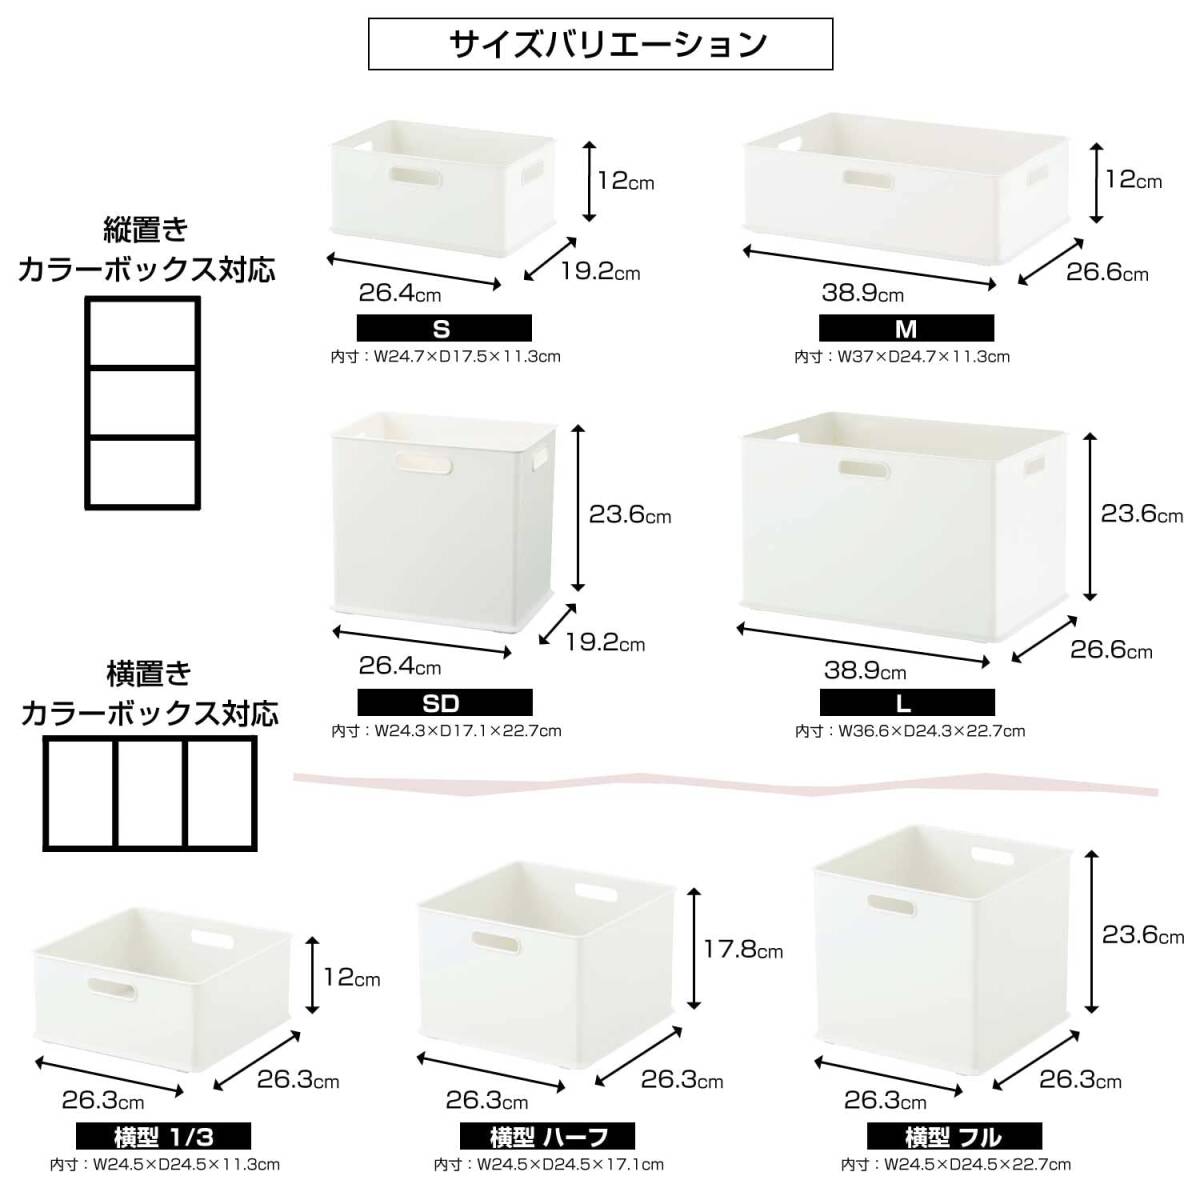 サンカ インボックス 「カラーボックスにぴったりフィット」する収納ボックス SDサイズ ブラック (幅26.4×奥行19.2×高さ23.6cm)_画像6